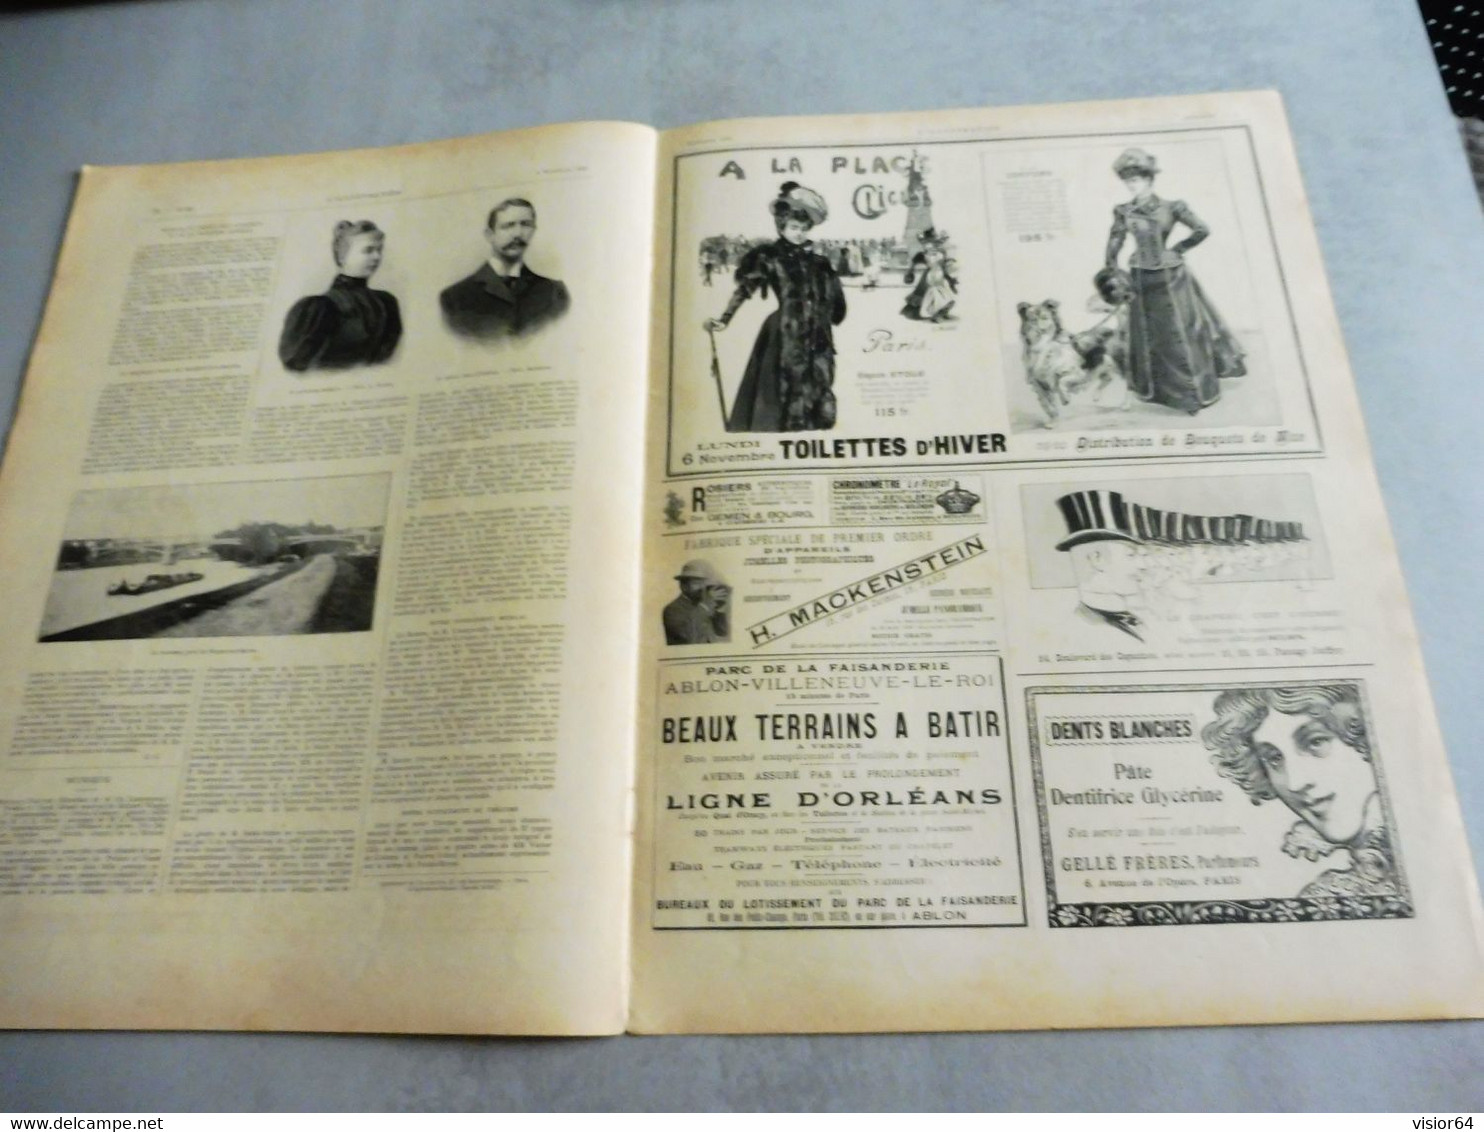 L’ILLUSTRATION 4 NOVEMBRE 1899-CONSERVATION GIBIER-POMPE INCENDIE TIRÉE PAR CHIENS- KLONDYKE-BOXE CHARLEMEONT/DRISCOLL